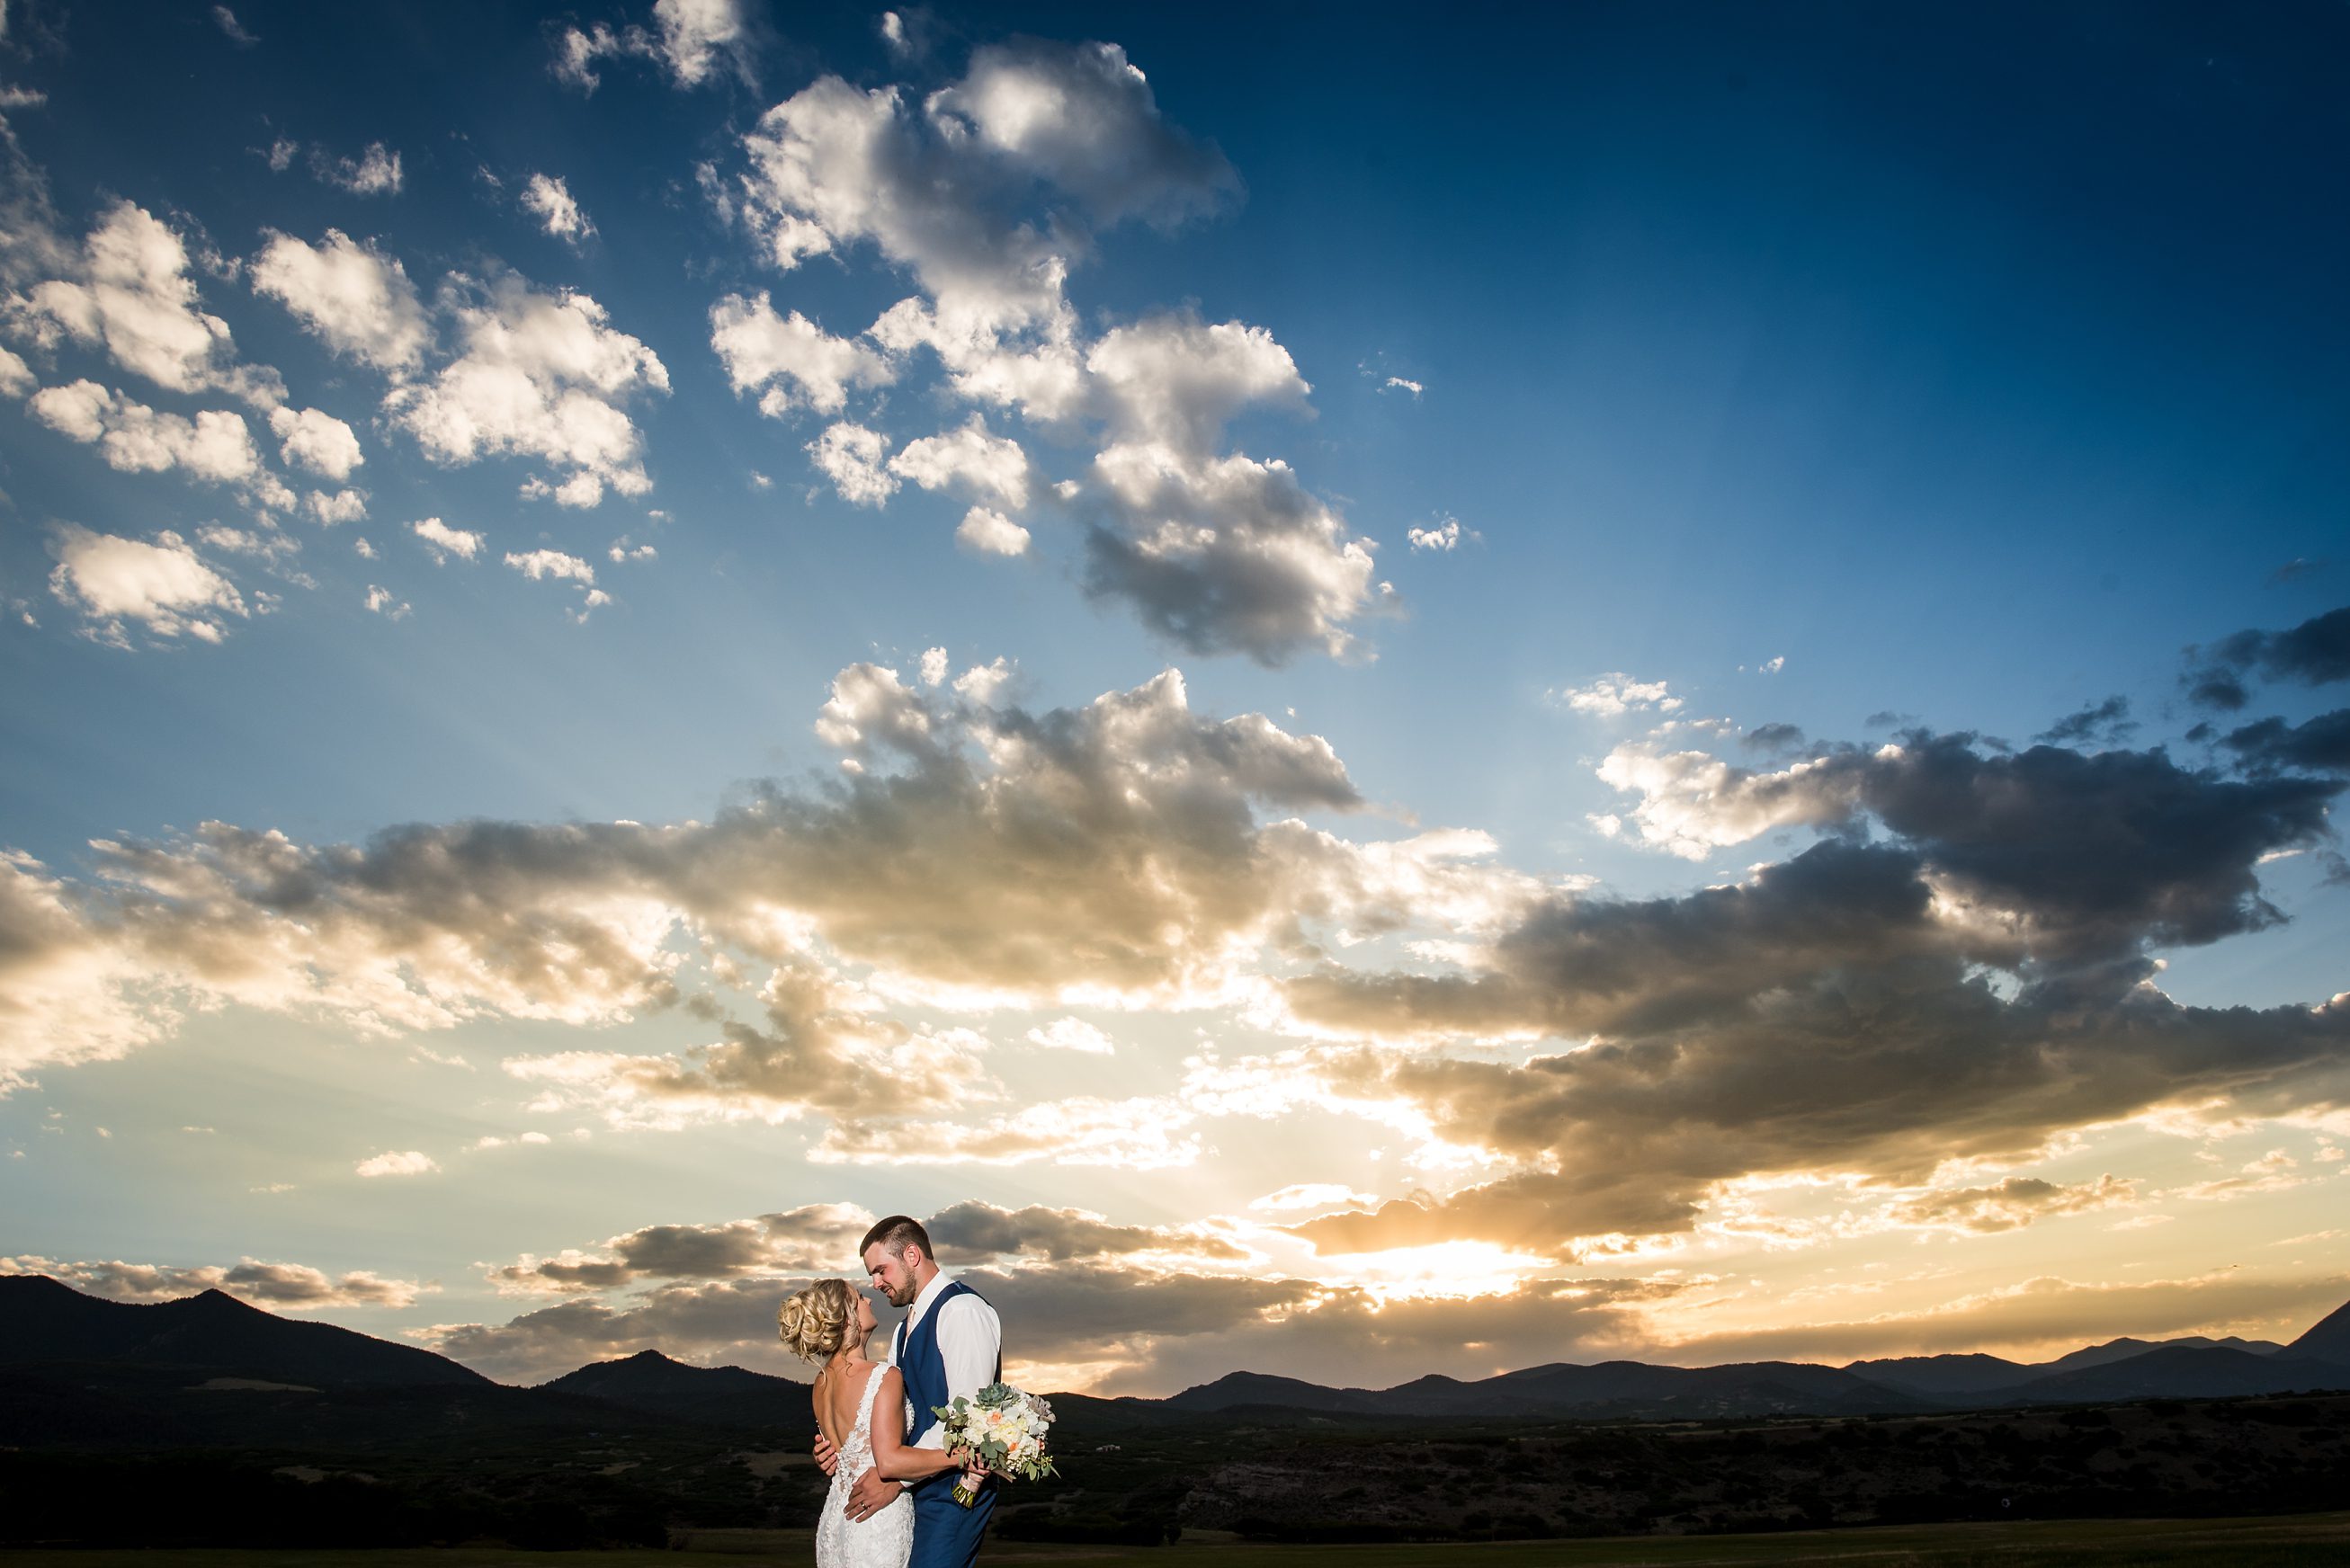  Colorado weddings, Cuchara, Albright Ranch, Colorado Wedding Photographers, sunset wedding photos